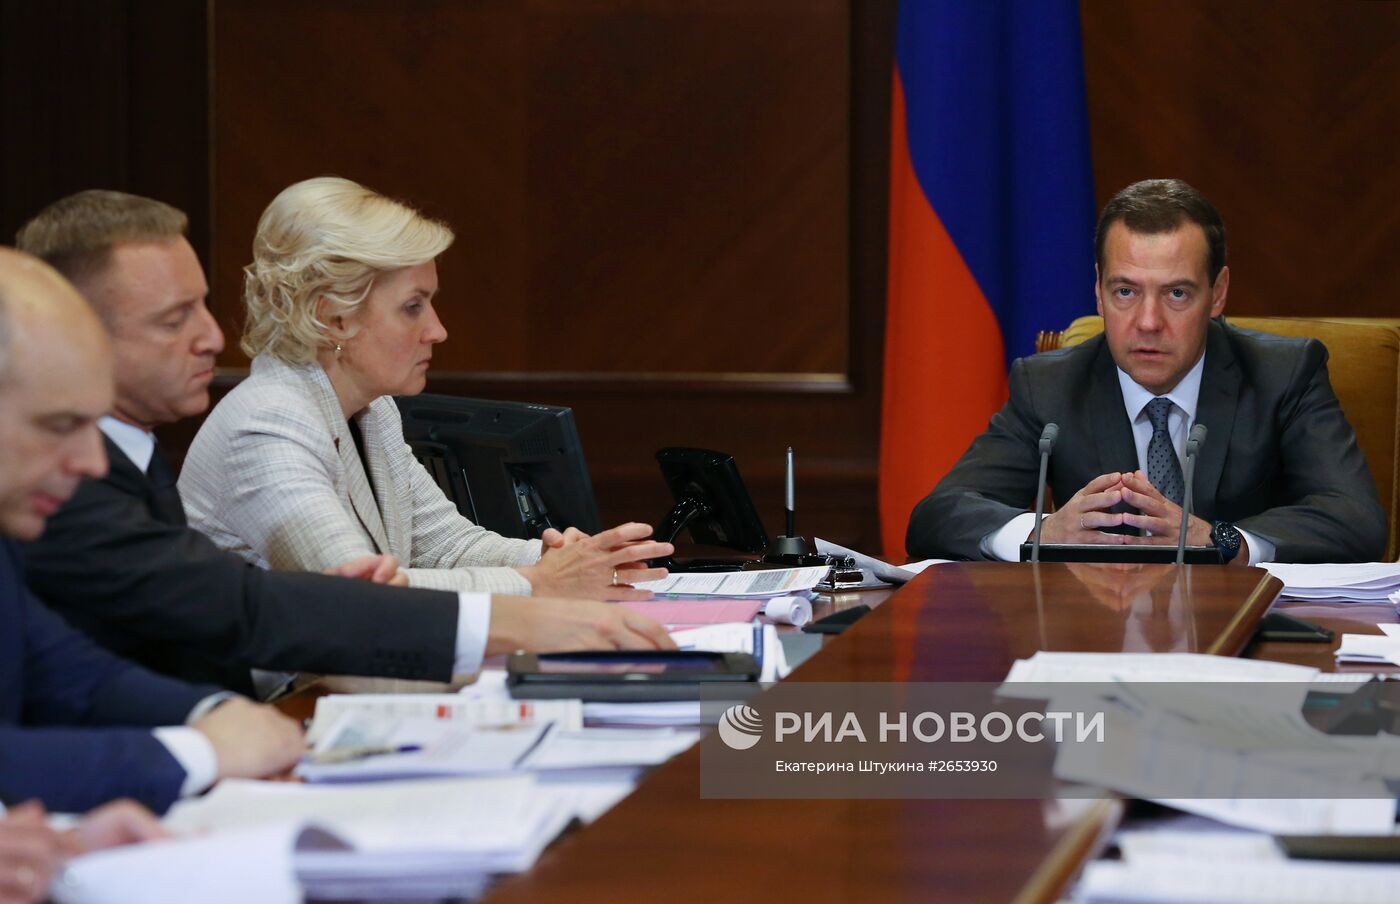 Премьер-министр РФ Д.Медведев провел совещание по расходам федерального бюджета 2016–2018 г.г.